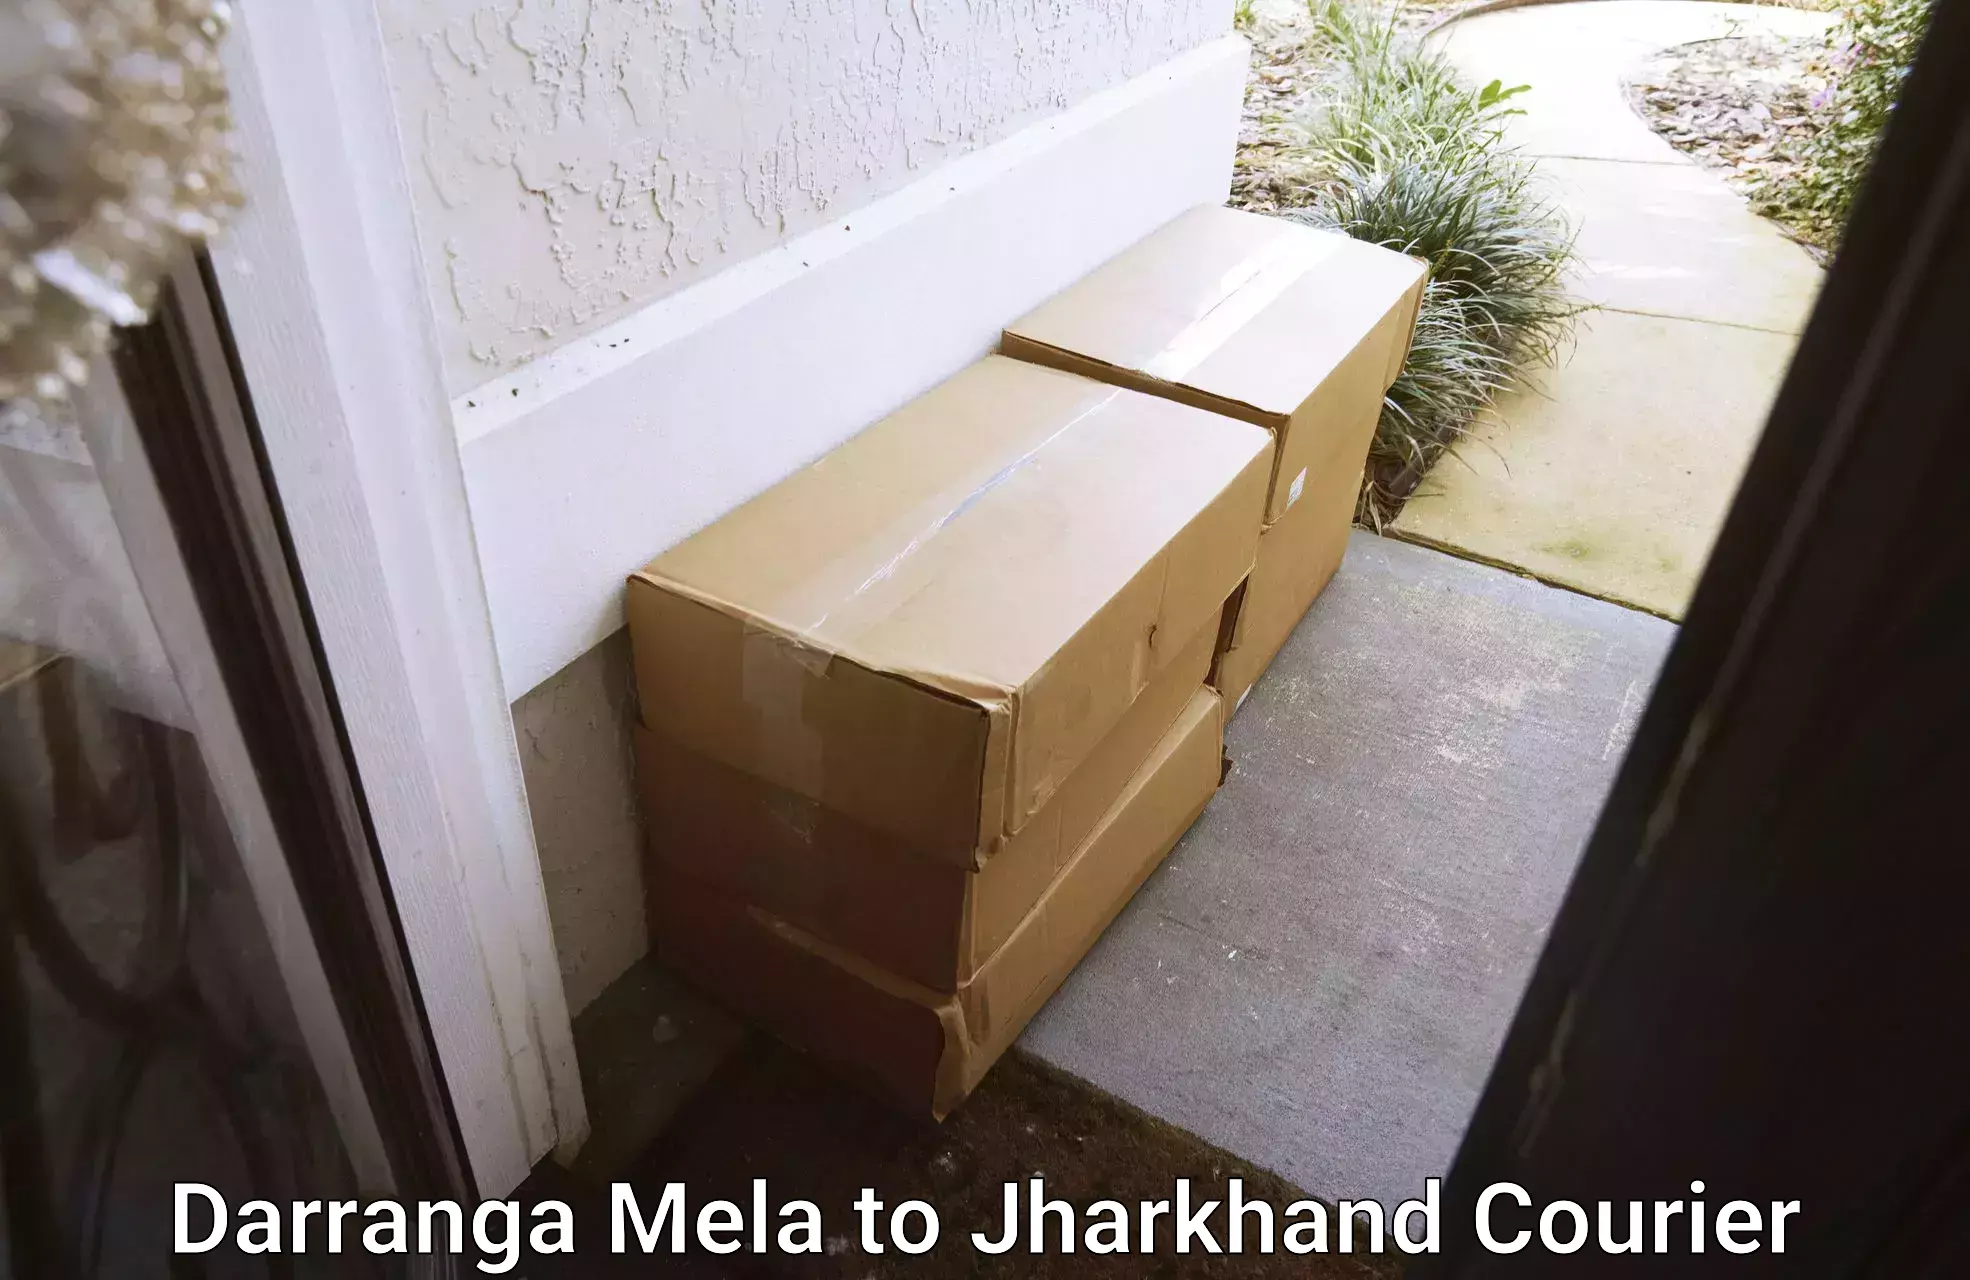 Special handling courier Darranga Mela to East Singhbhum